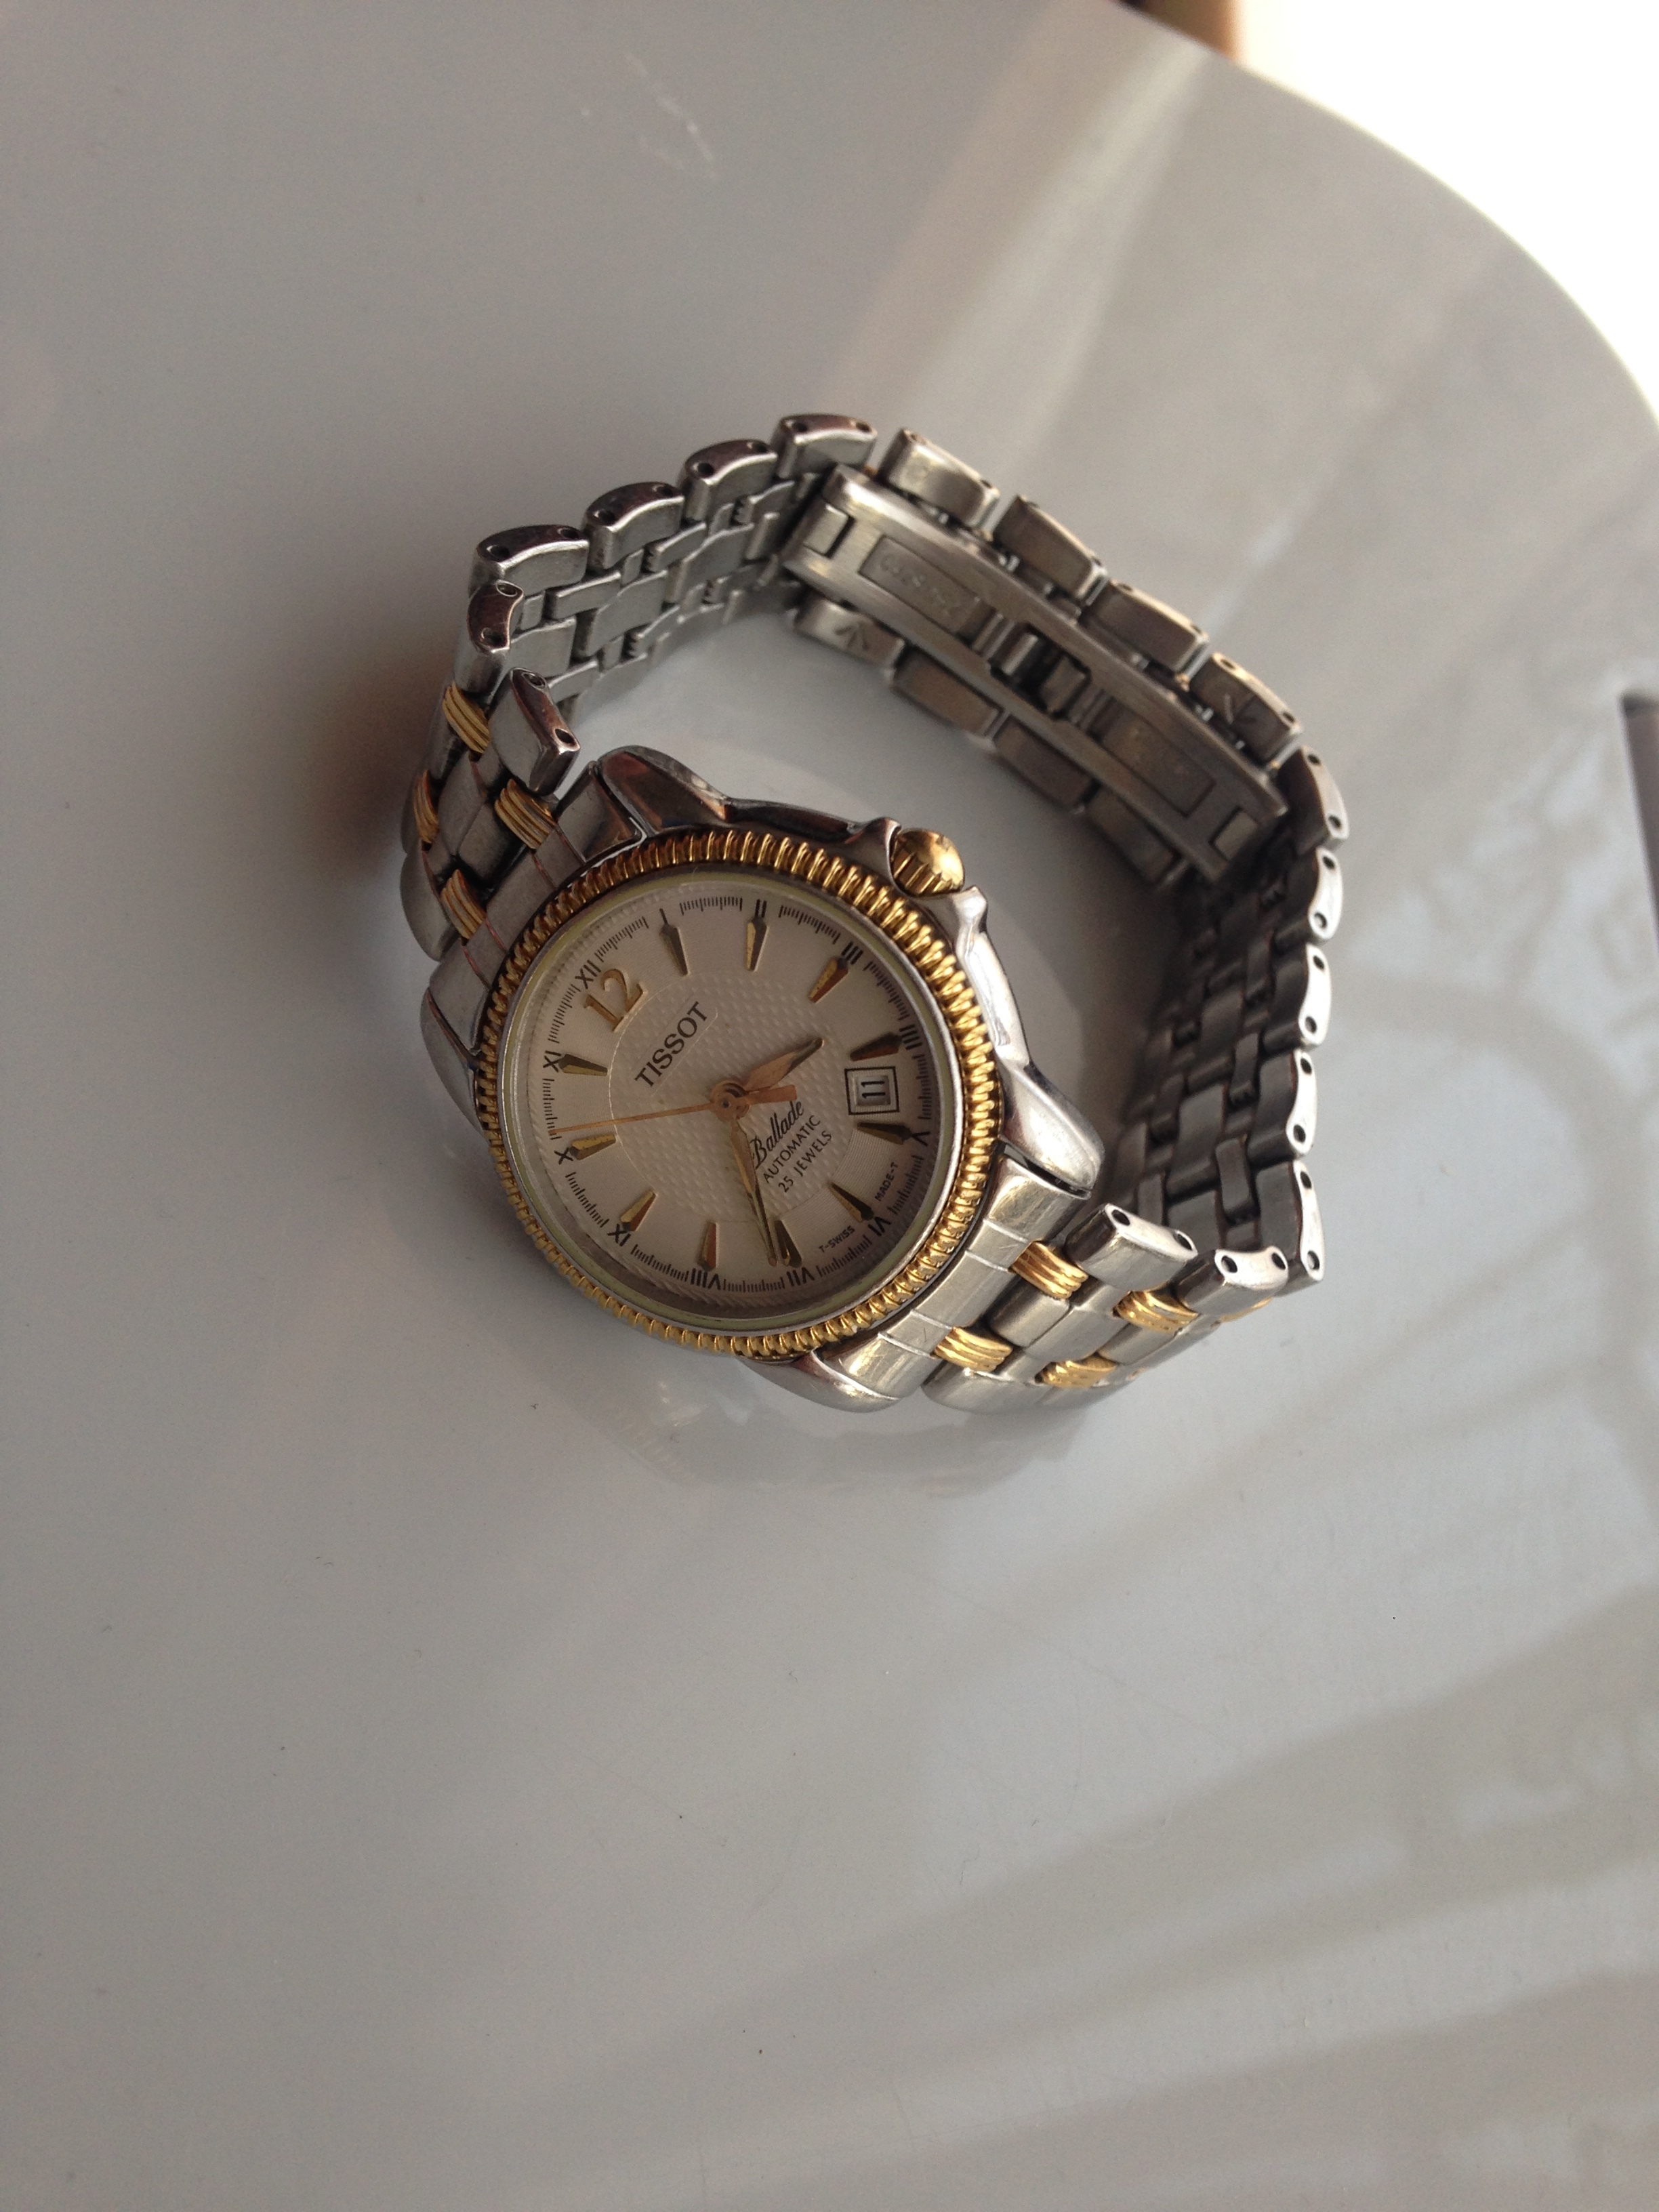 TERUG: horloge Esprit 25 EURO! Tissot en Steiner verkocht! - Horlogemarkt (archief) - Horlogeforum.nl het forum voor liefhebbers van horloges